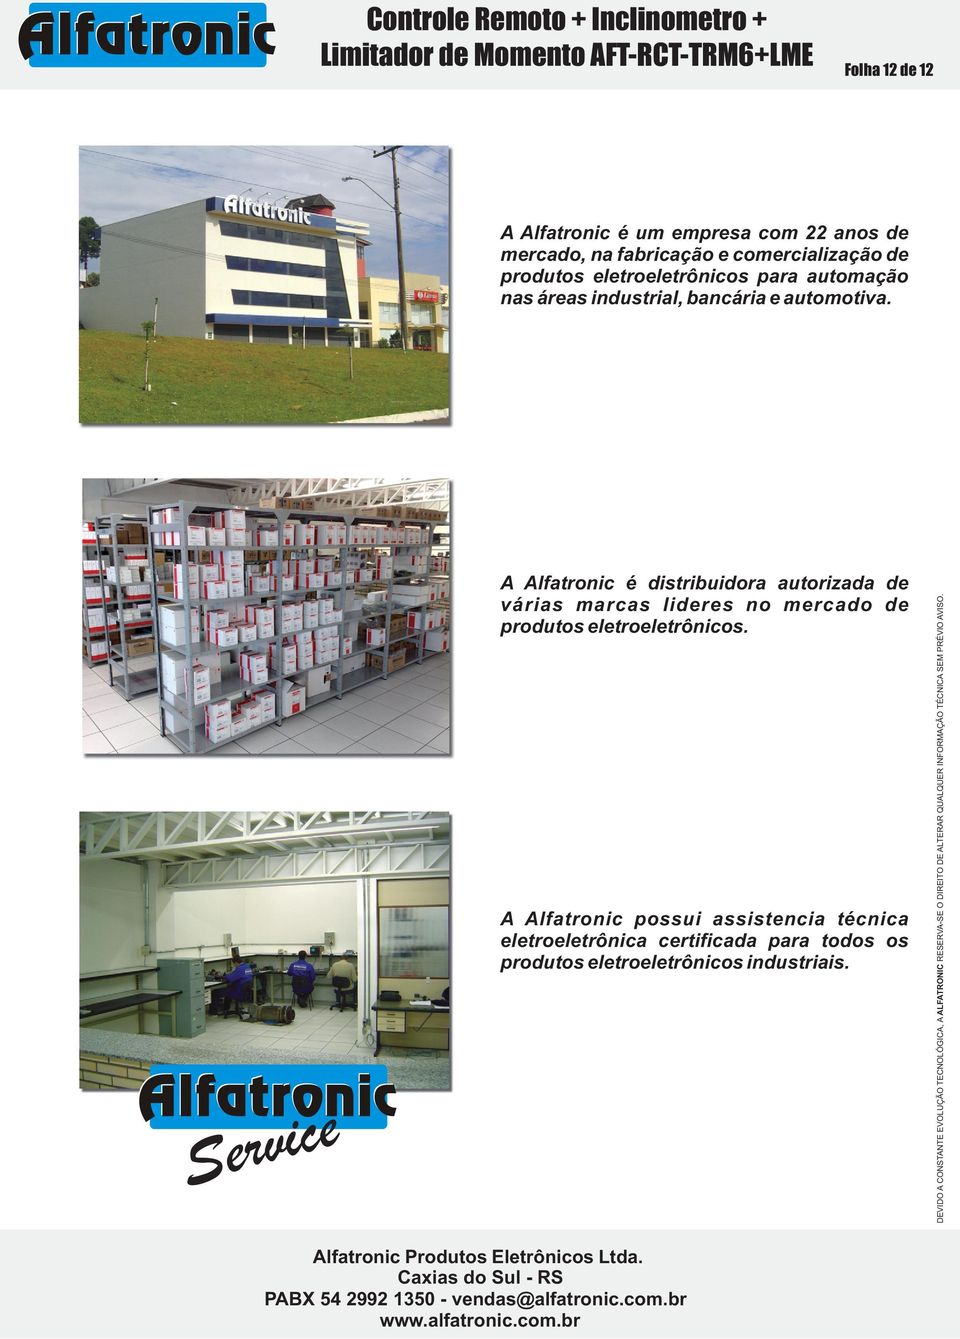 A Alfatronic é distribuidora autorizada de várias marcas lideres no mercado de produtos eletroeletrônicos.